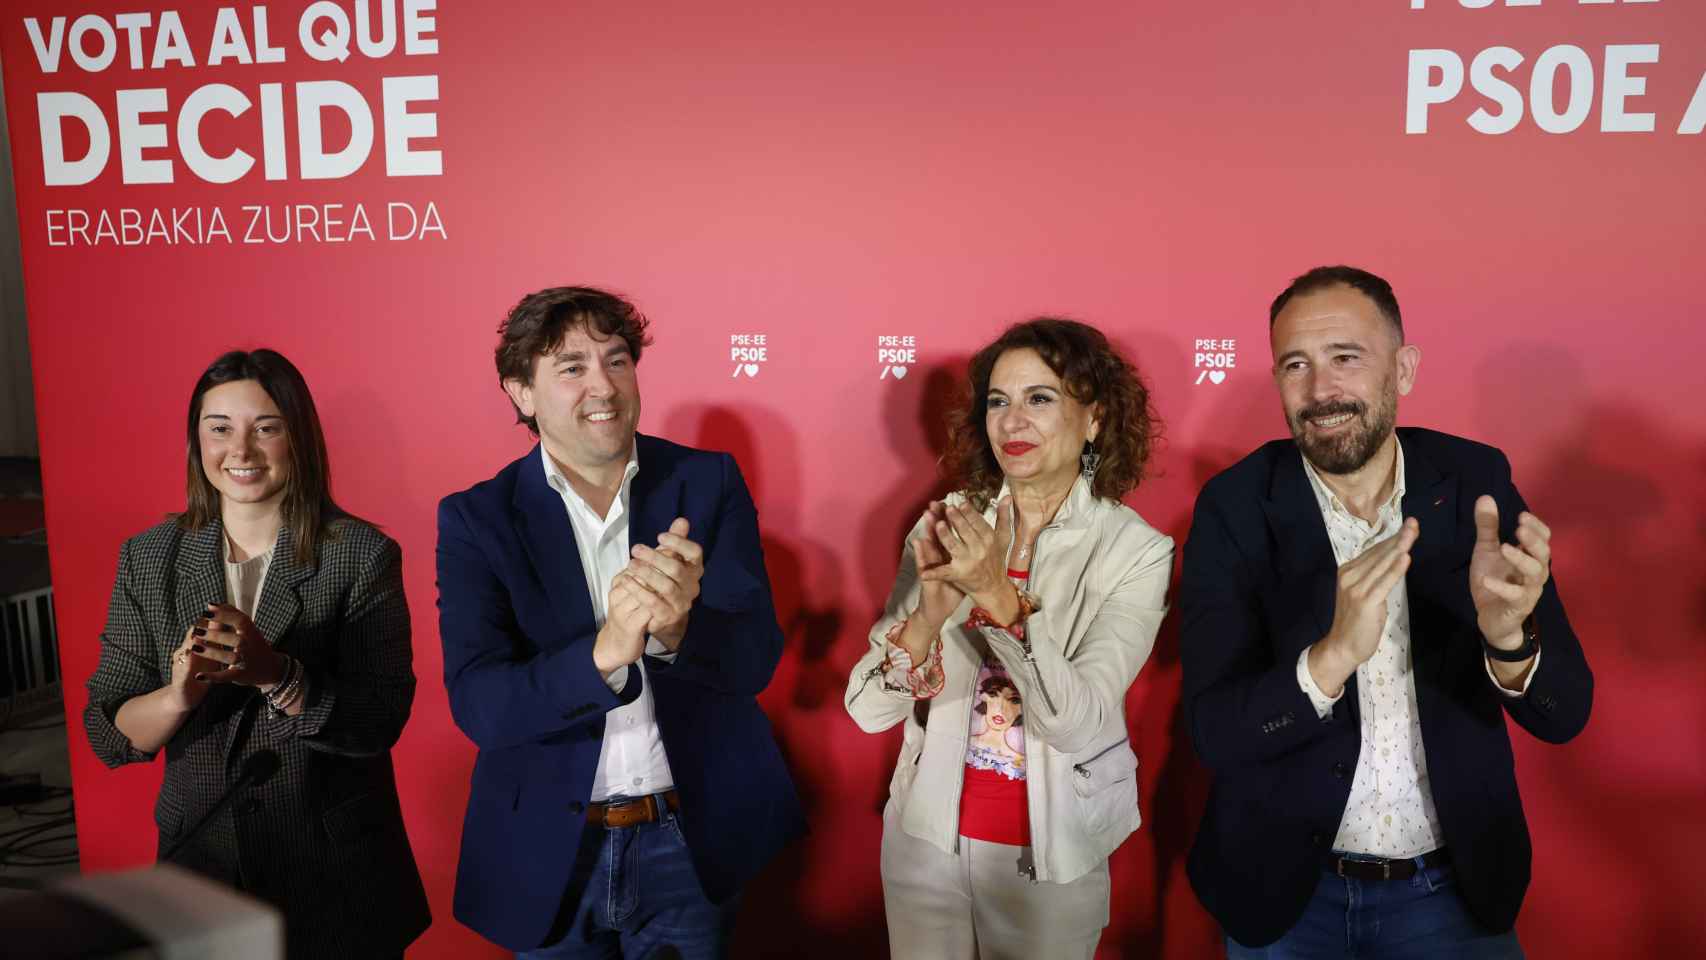 La vicesecretaria general del PSOE y vicepresidenta primera del Gobierno, María Jesús Montero (2d), y el candidato a lehendakari, Eneko Andueza (2i), han participado este jueves en Bilbao en un acto de apertura de la campaña electoral del PSE-EE